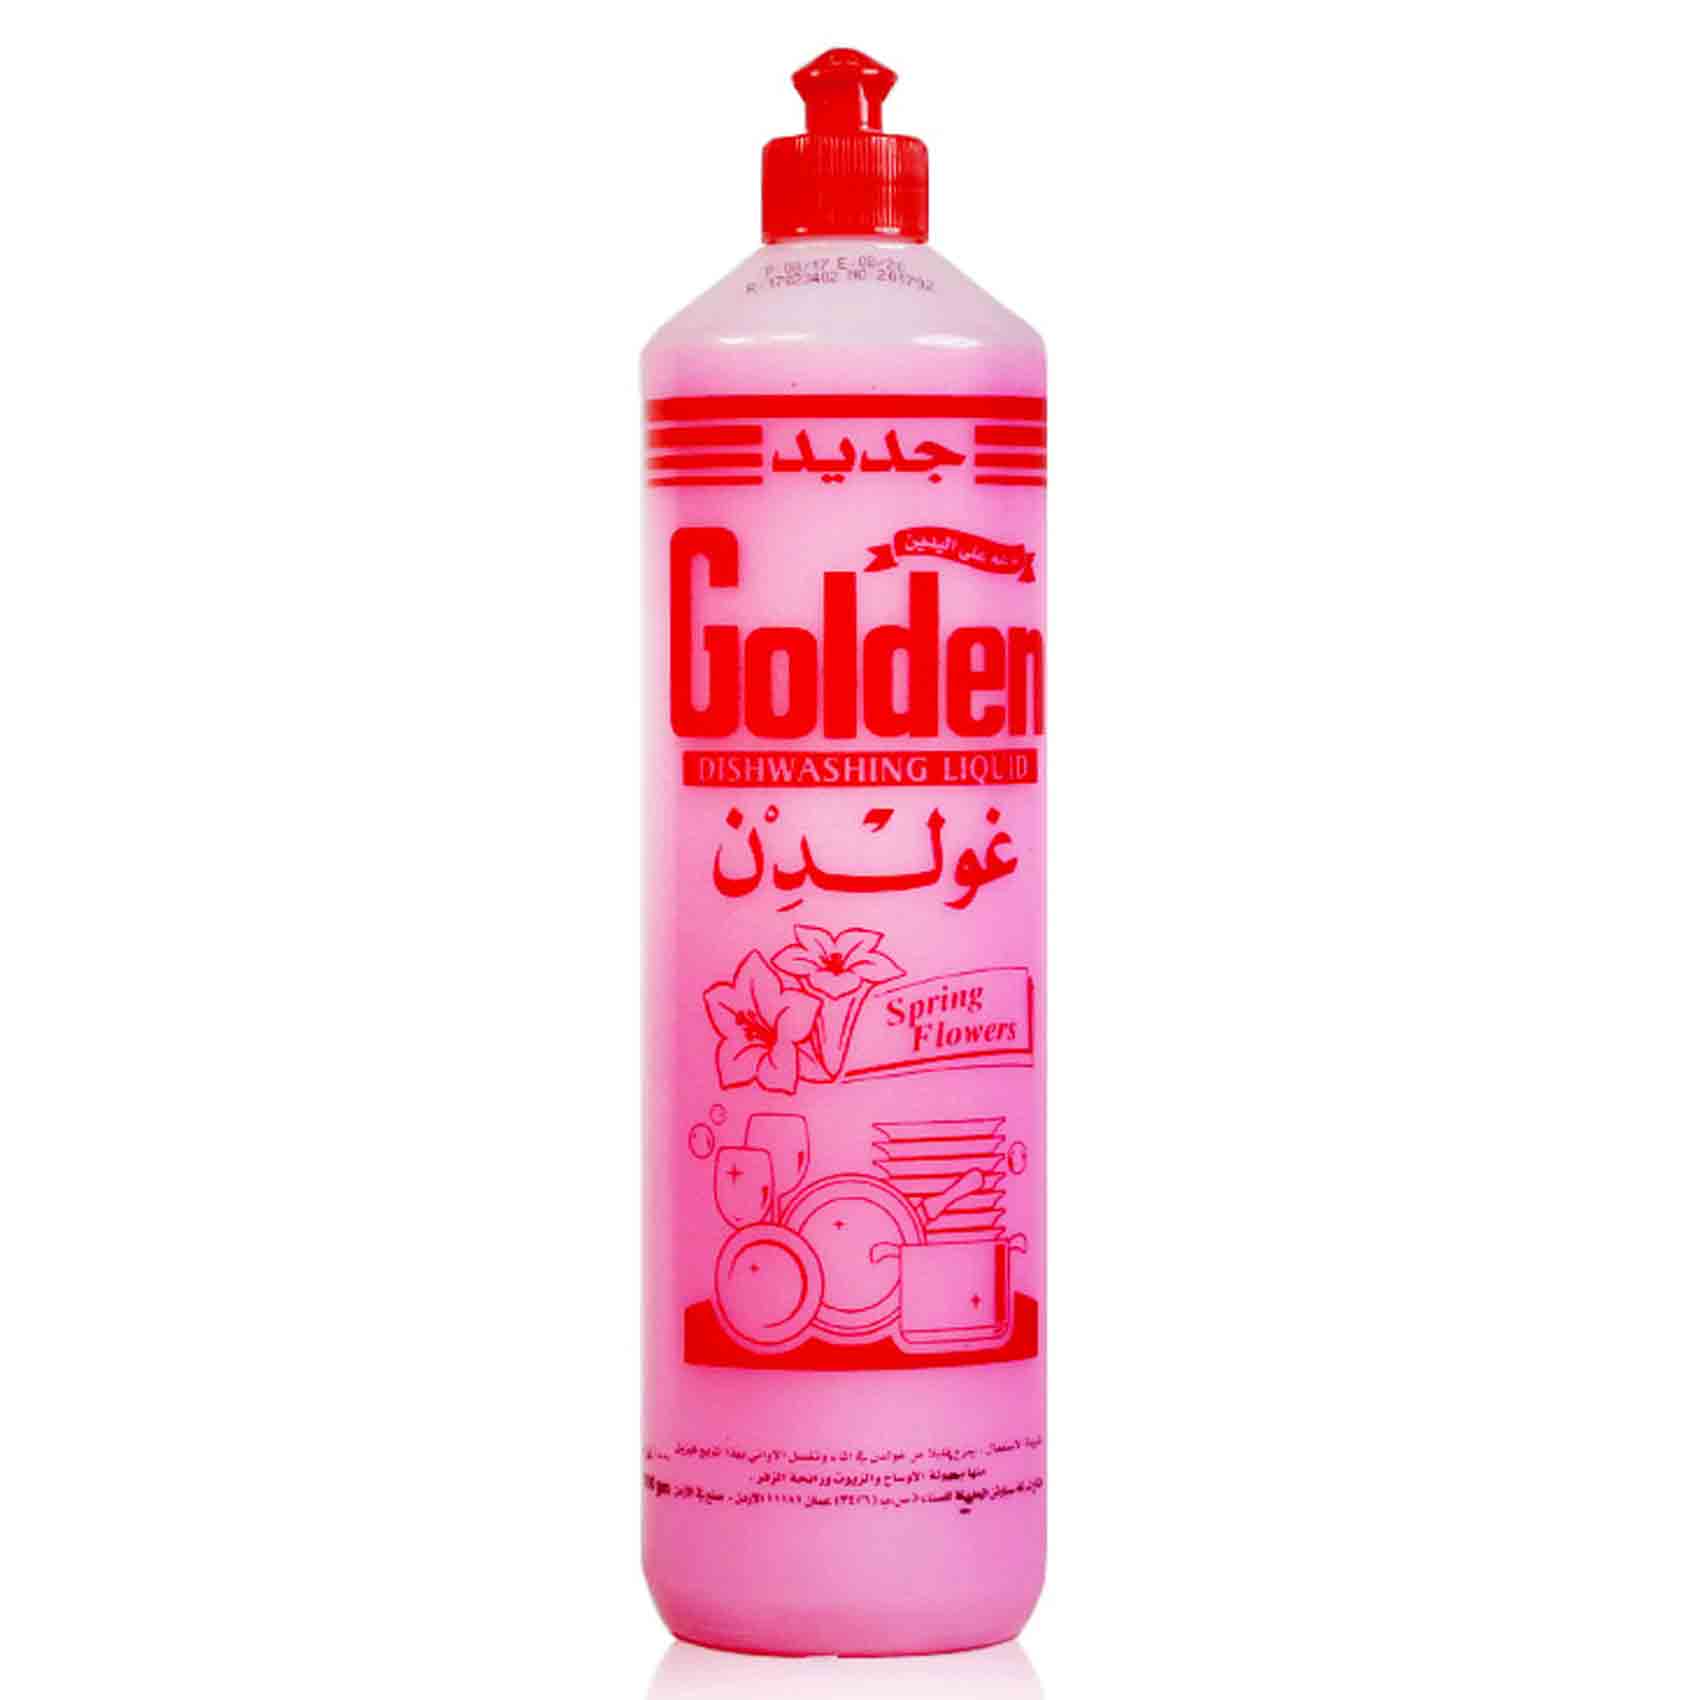 Golden Dishwashing Pink 1 Liter